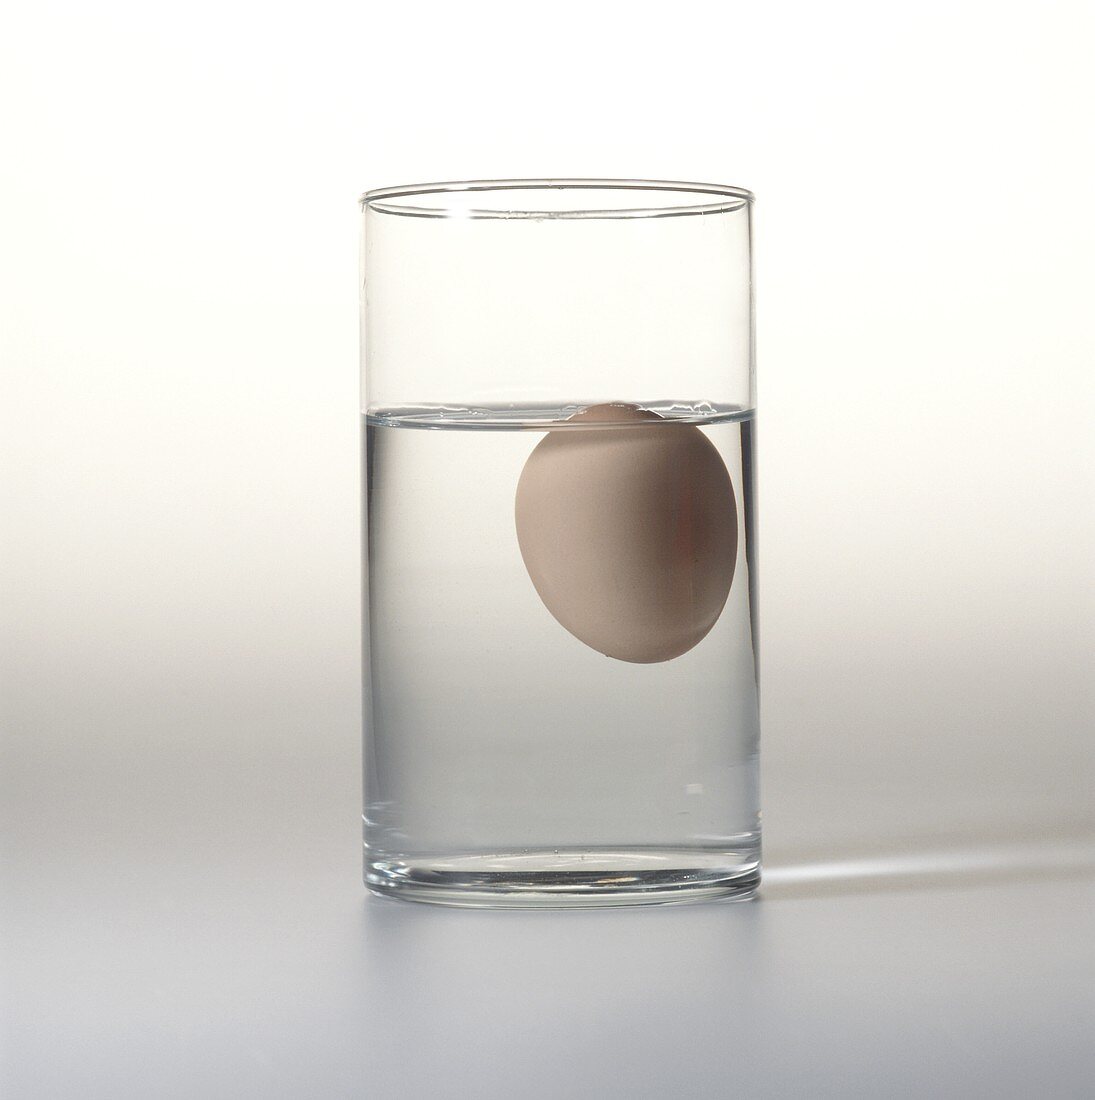 Altes Ei in Glas mit Kochsalzlösung (schwimmt)